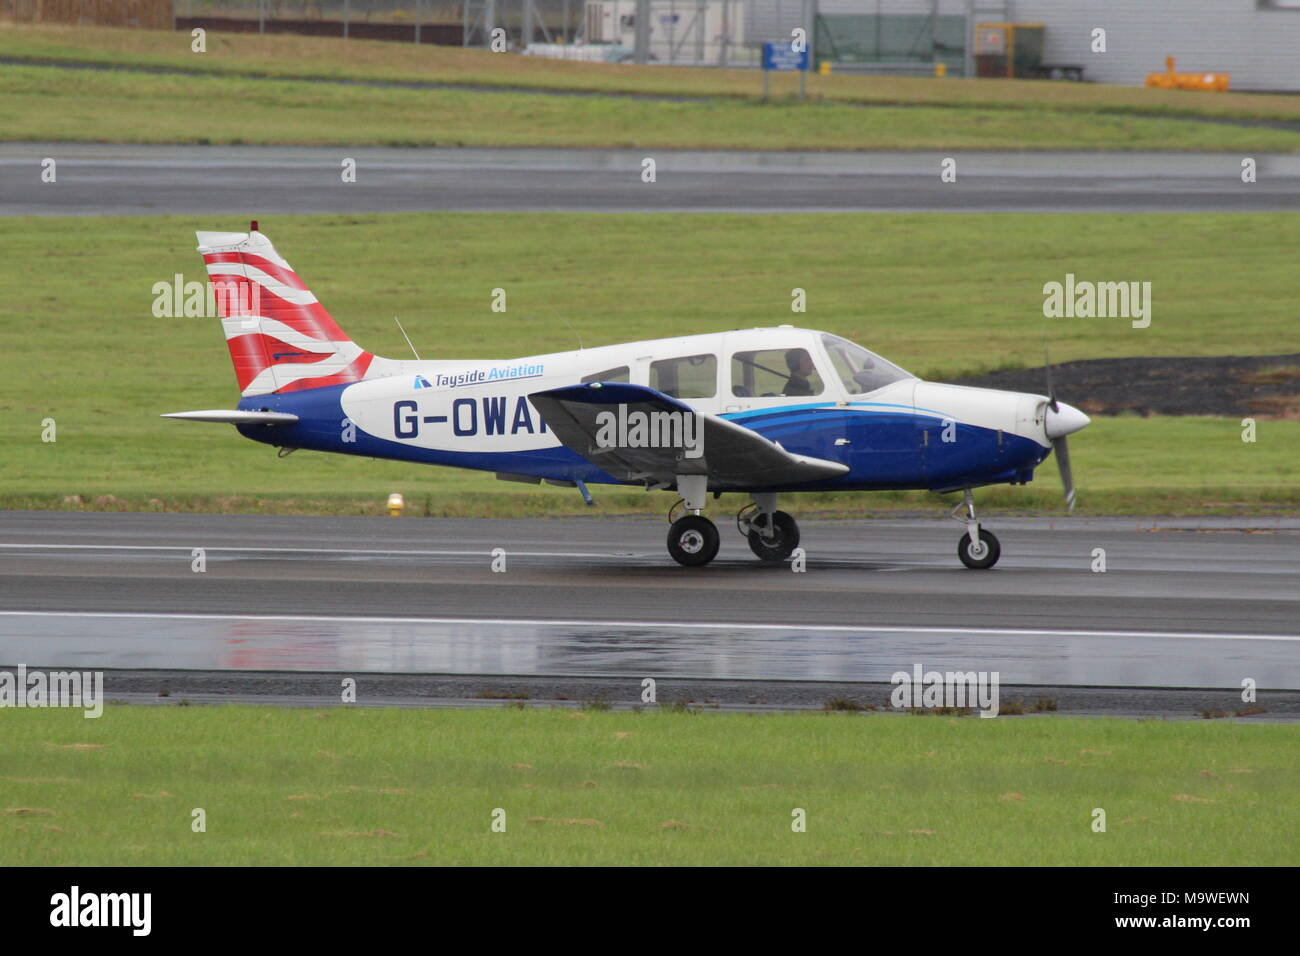 G-OWAP, un Piper PA-28-161 Guerriero II azionato da Tayside Aviation, presso l'Aeroporto di Prestwick in Ayrshire. Foto Stock